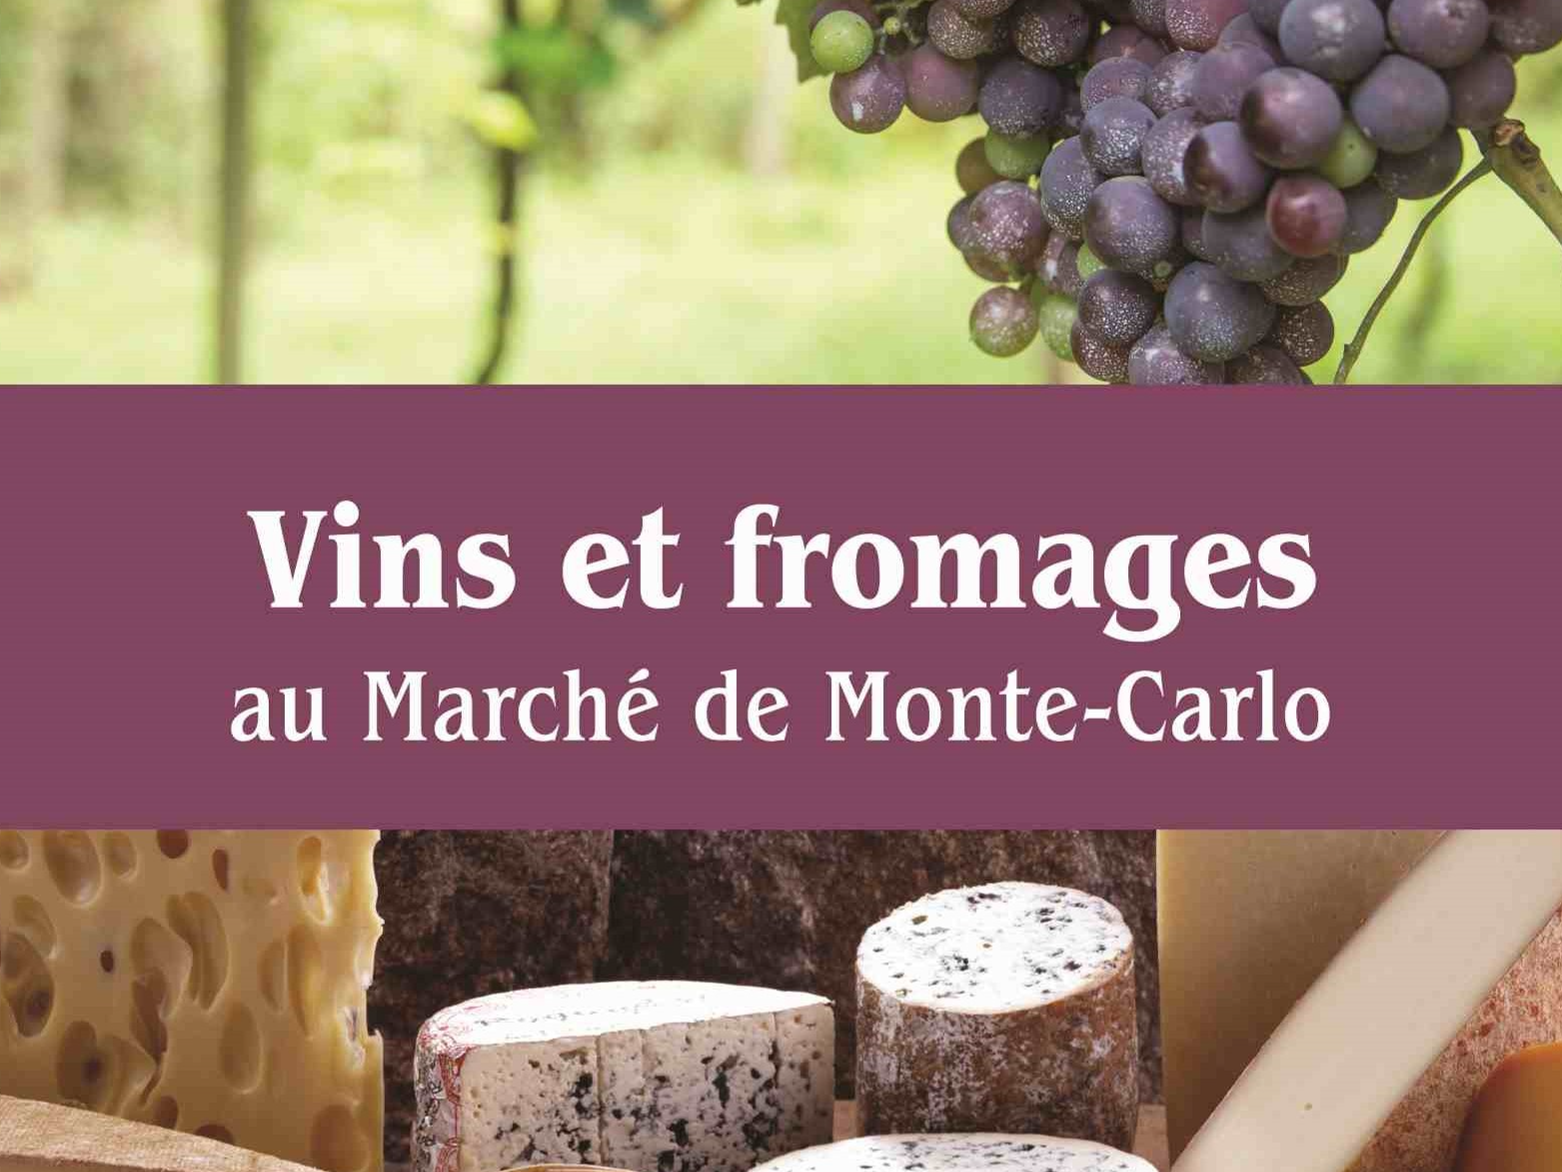 Marché des vins et fromages au Marché de Monte-Carlo